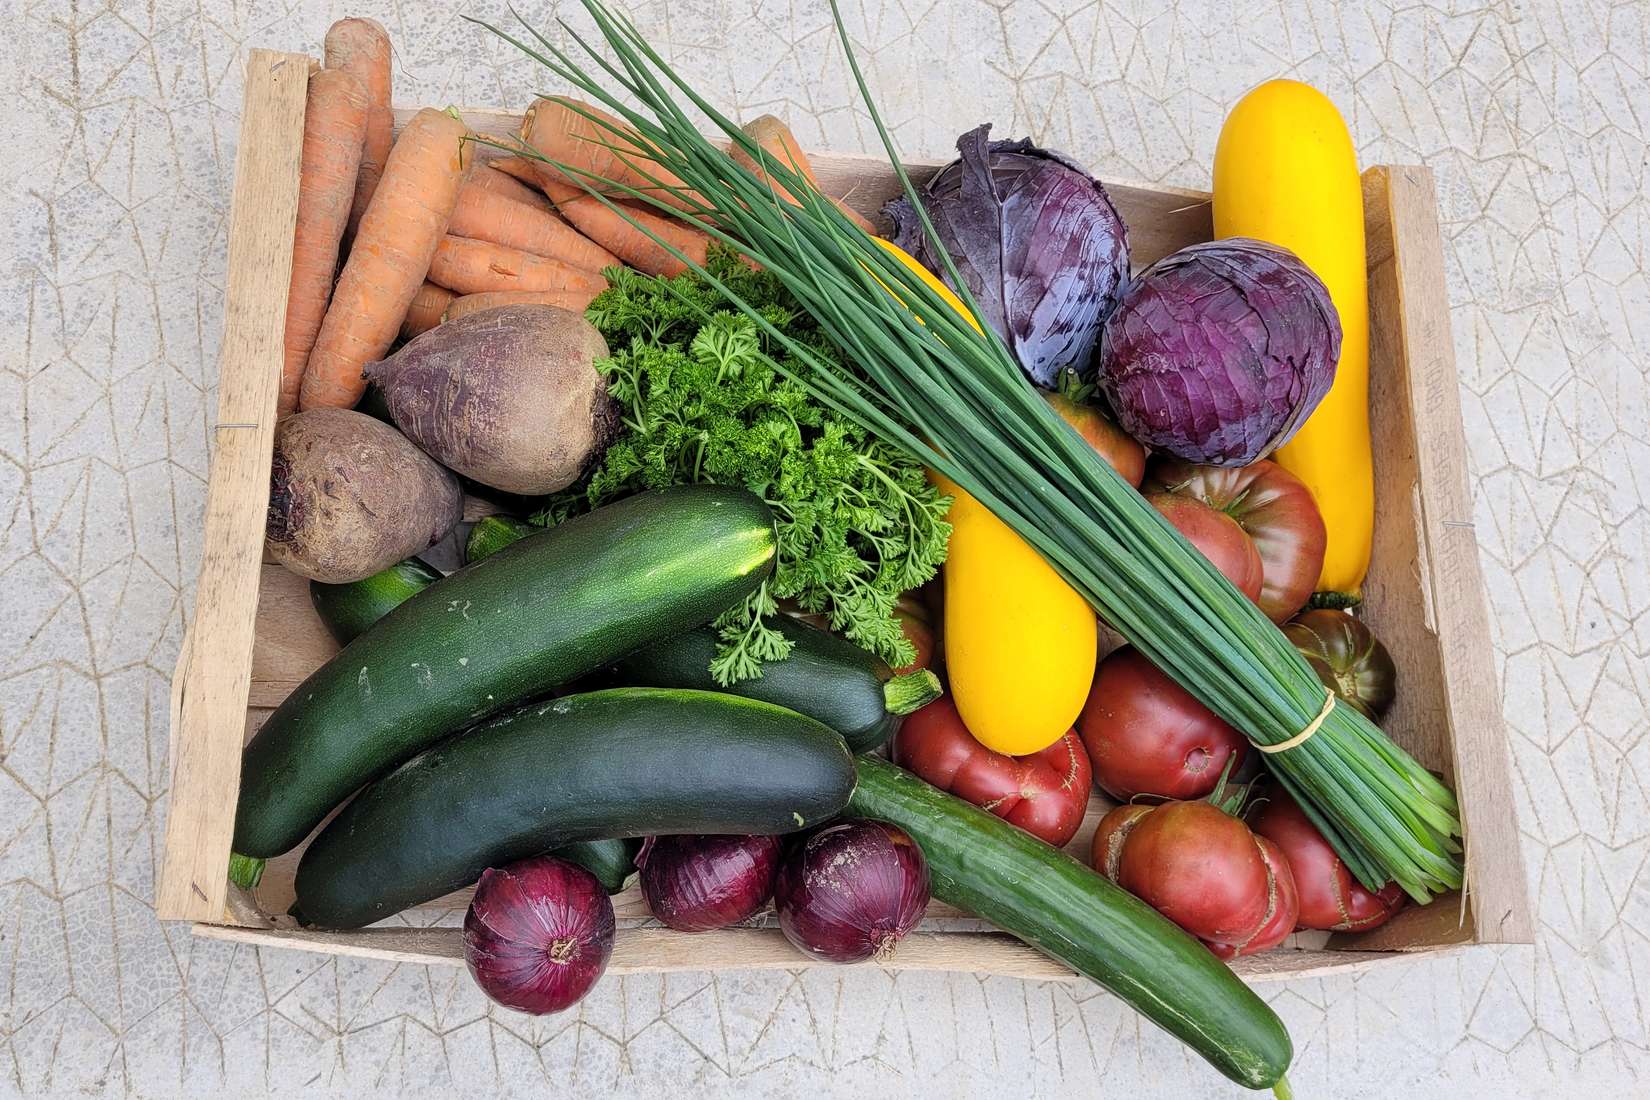 cagette de légumes bio : courgettes, carottes, tomates, betteraves, persil, ciboulette, salade